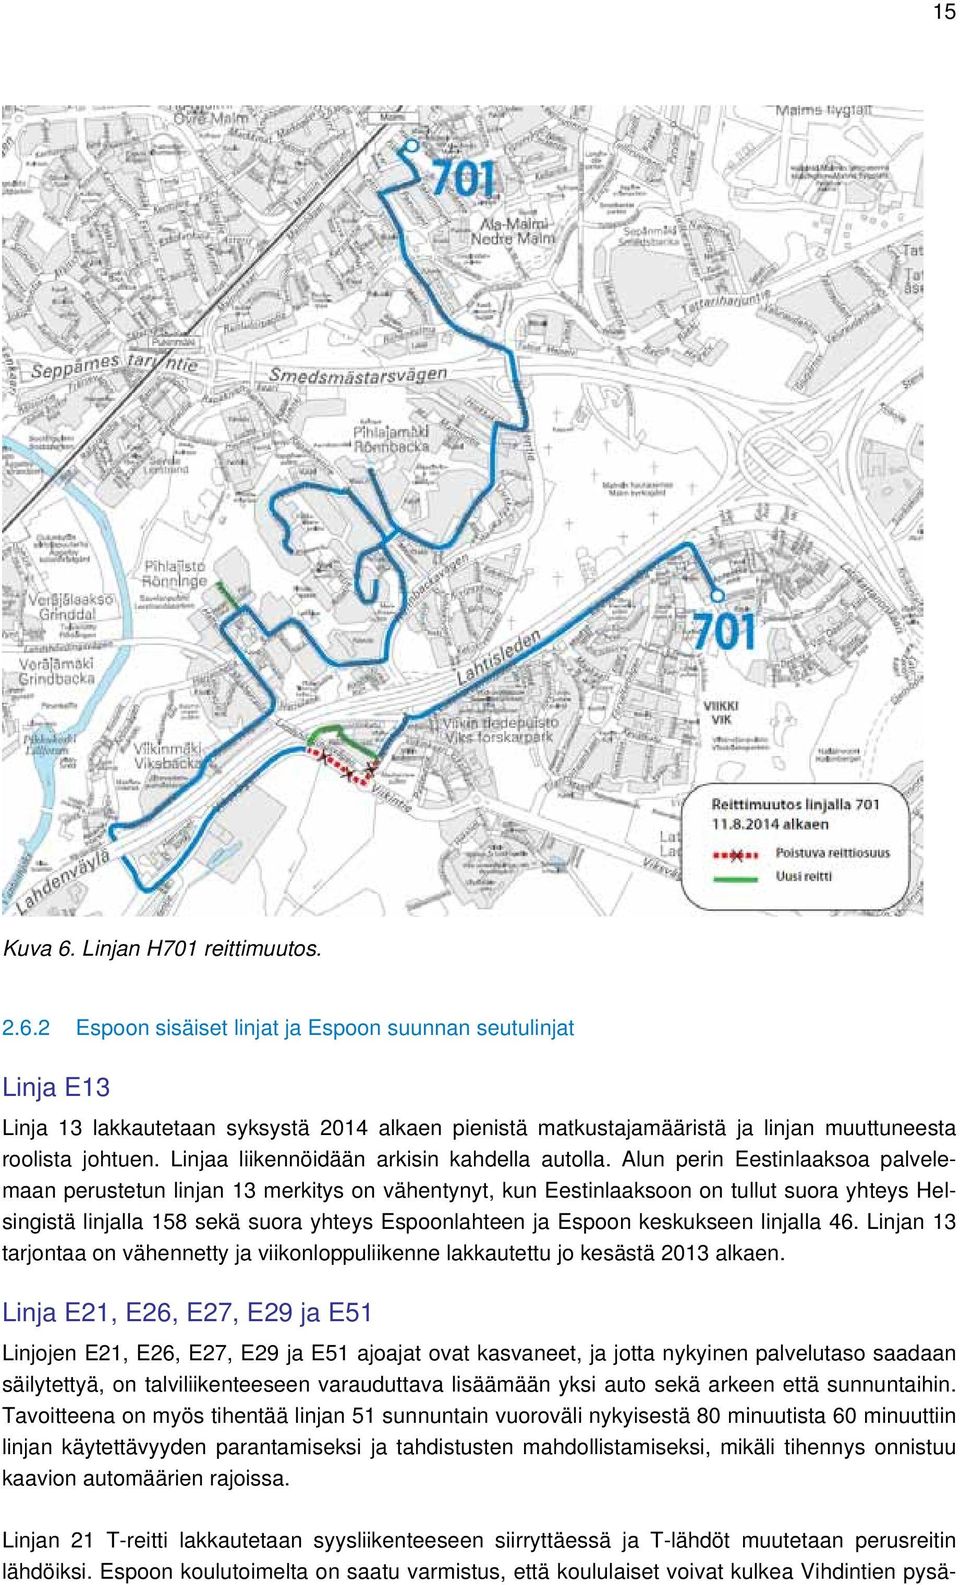 Alun perin Eestinlaaksoa palvelemaan perustetun linjan 13 merkitys on vähentynyt, kun Eestinlaaksoon on tullut suora yhteys Helsingistä linjalla 158 sekä suora yhteys Espoonlahteen ja Espoon